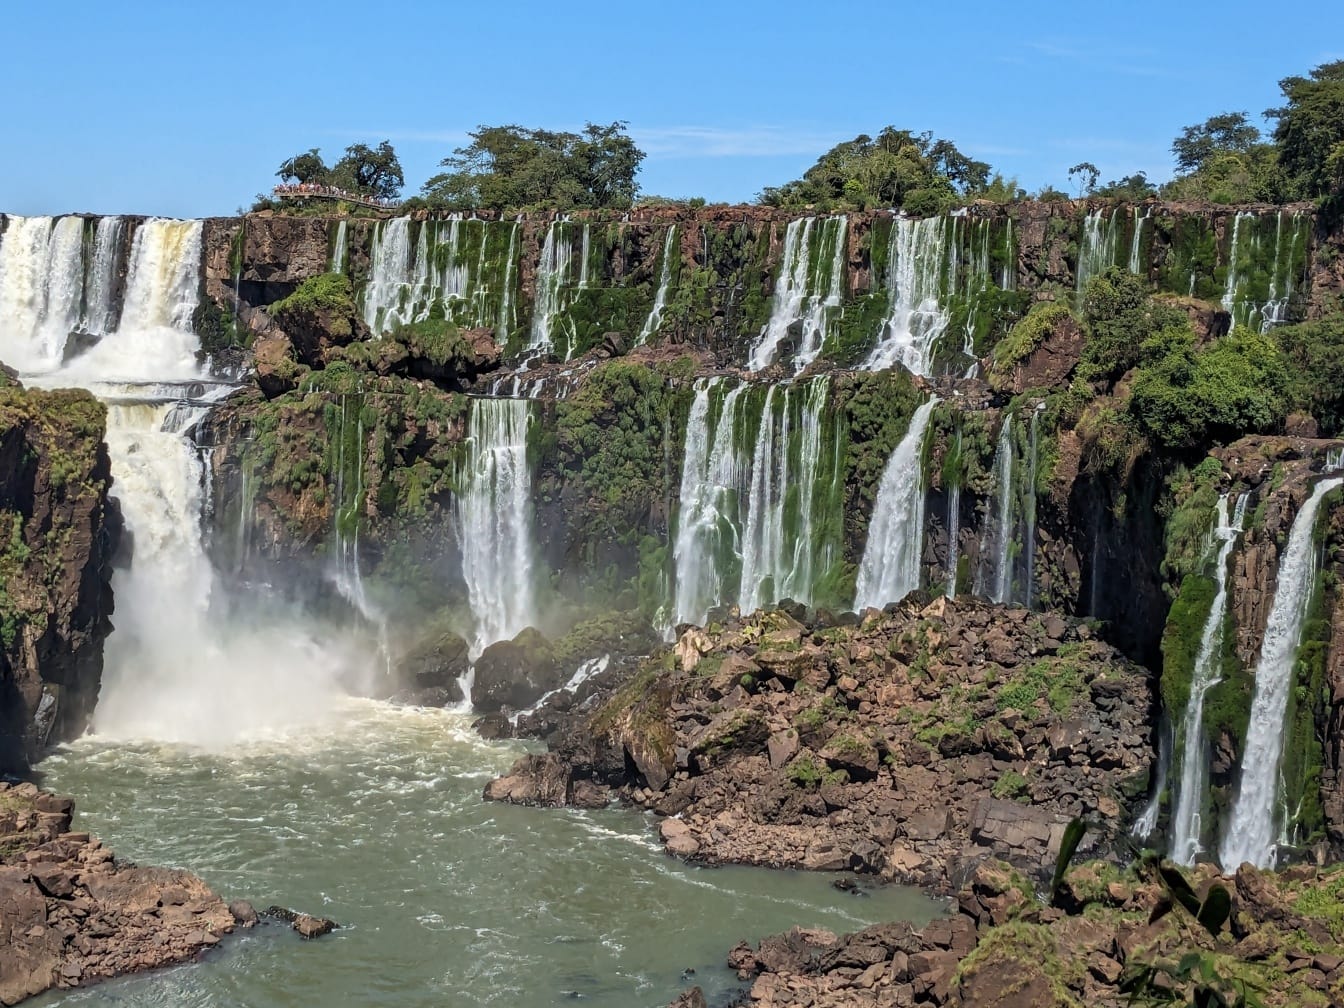 Prachtig landschap van de rivier van Iguazu met watervallen en groene bomen op kliffen